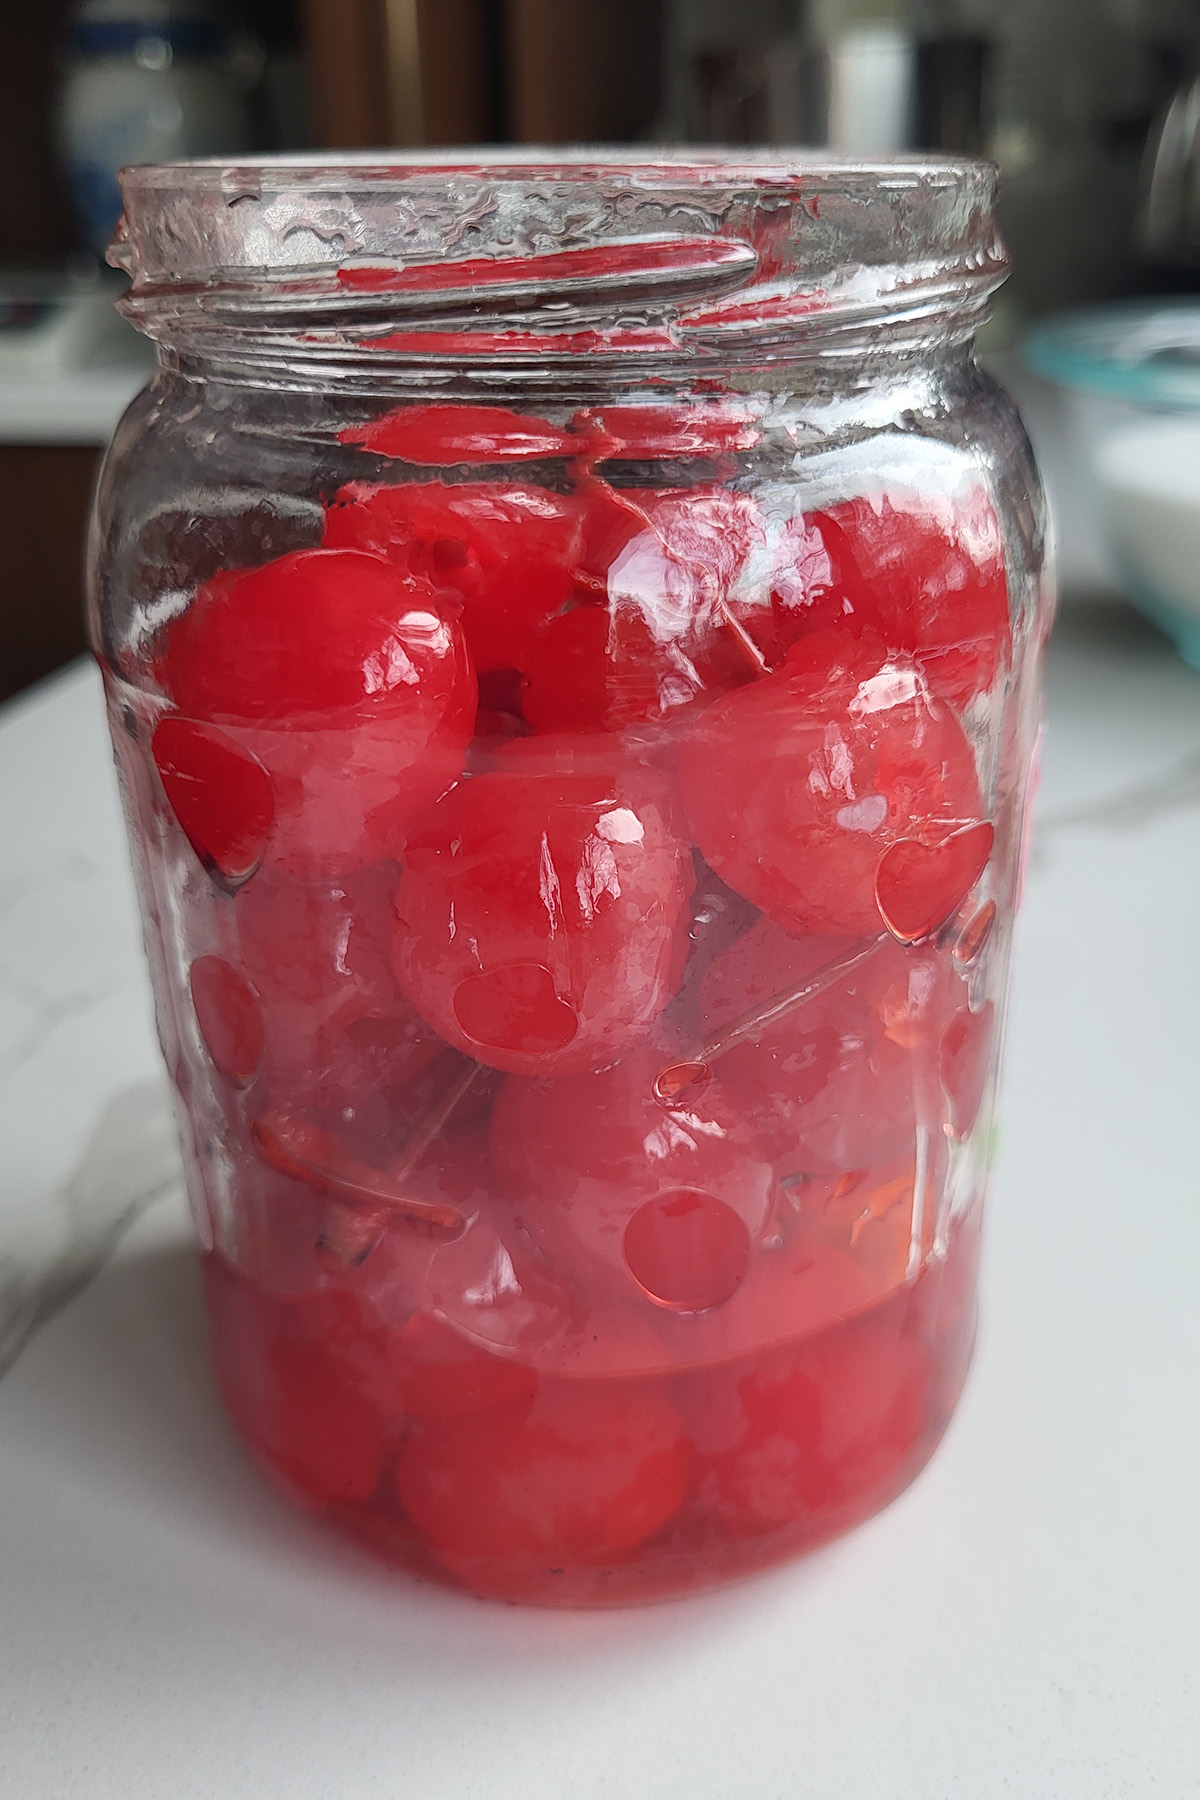 a jar of maraschino cherries.